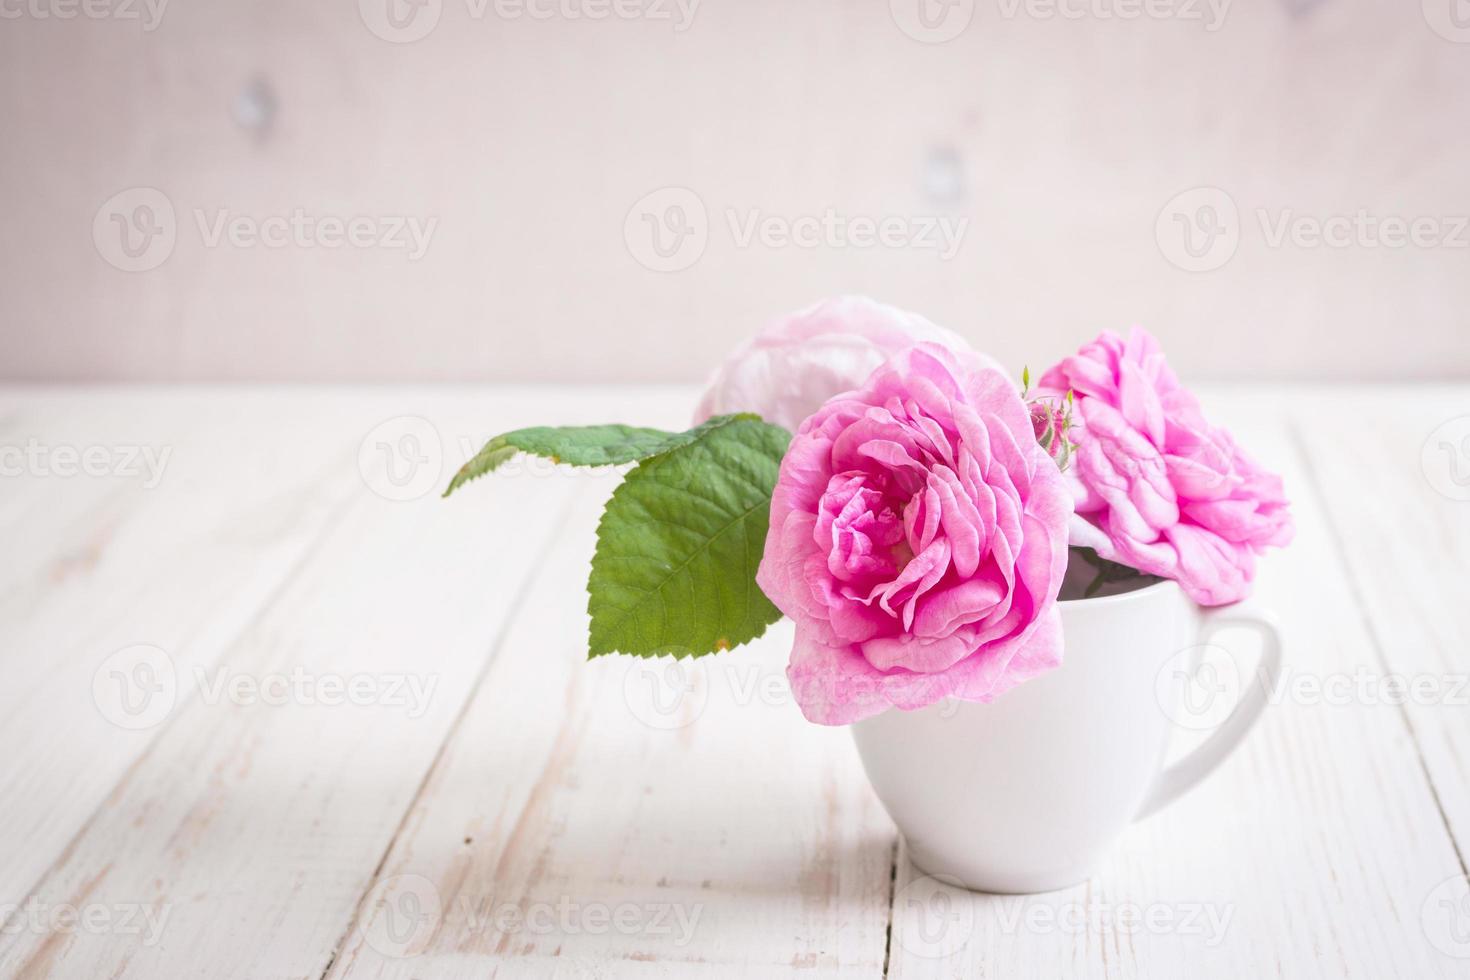 roses de thé rose sur un fond en bois blanc photo